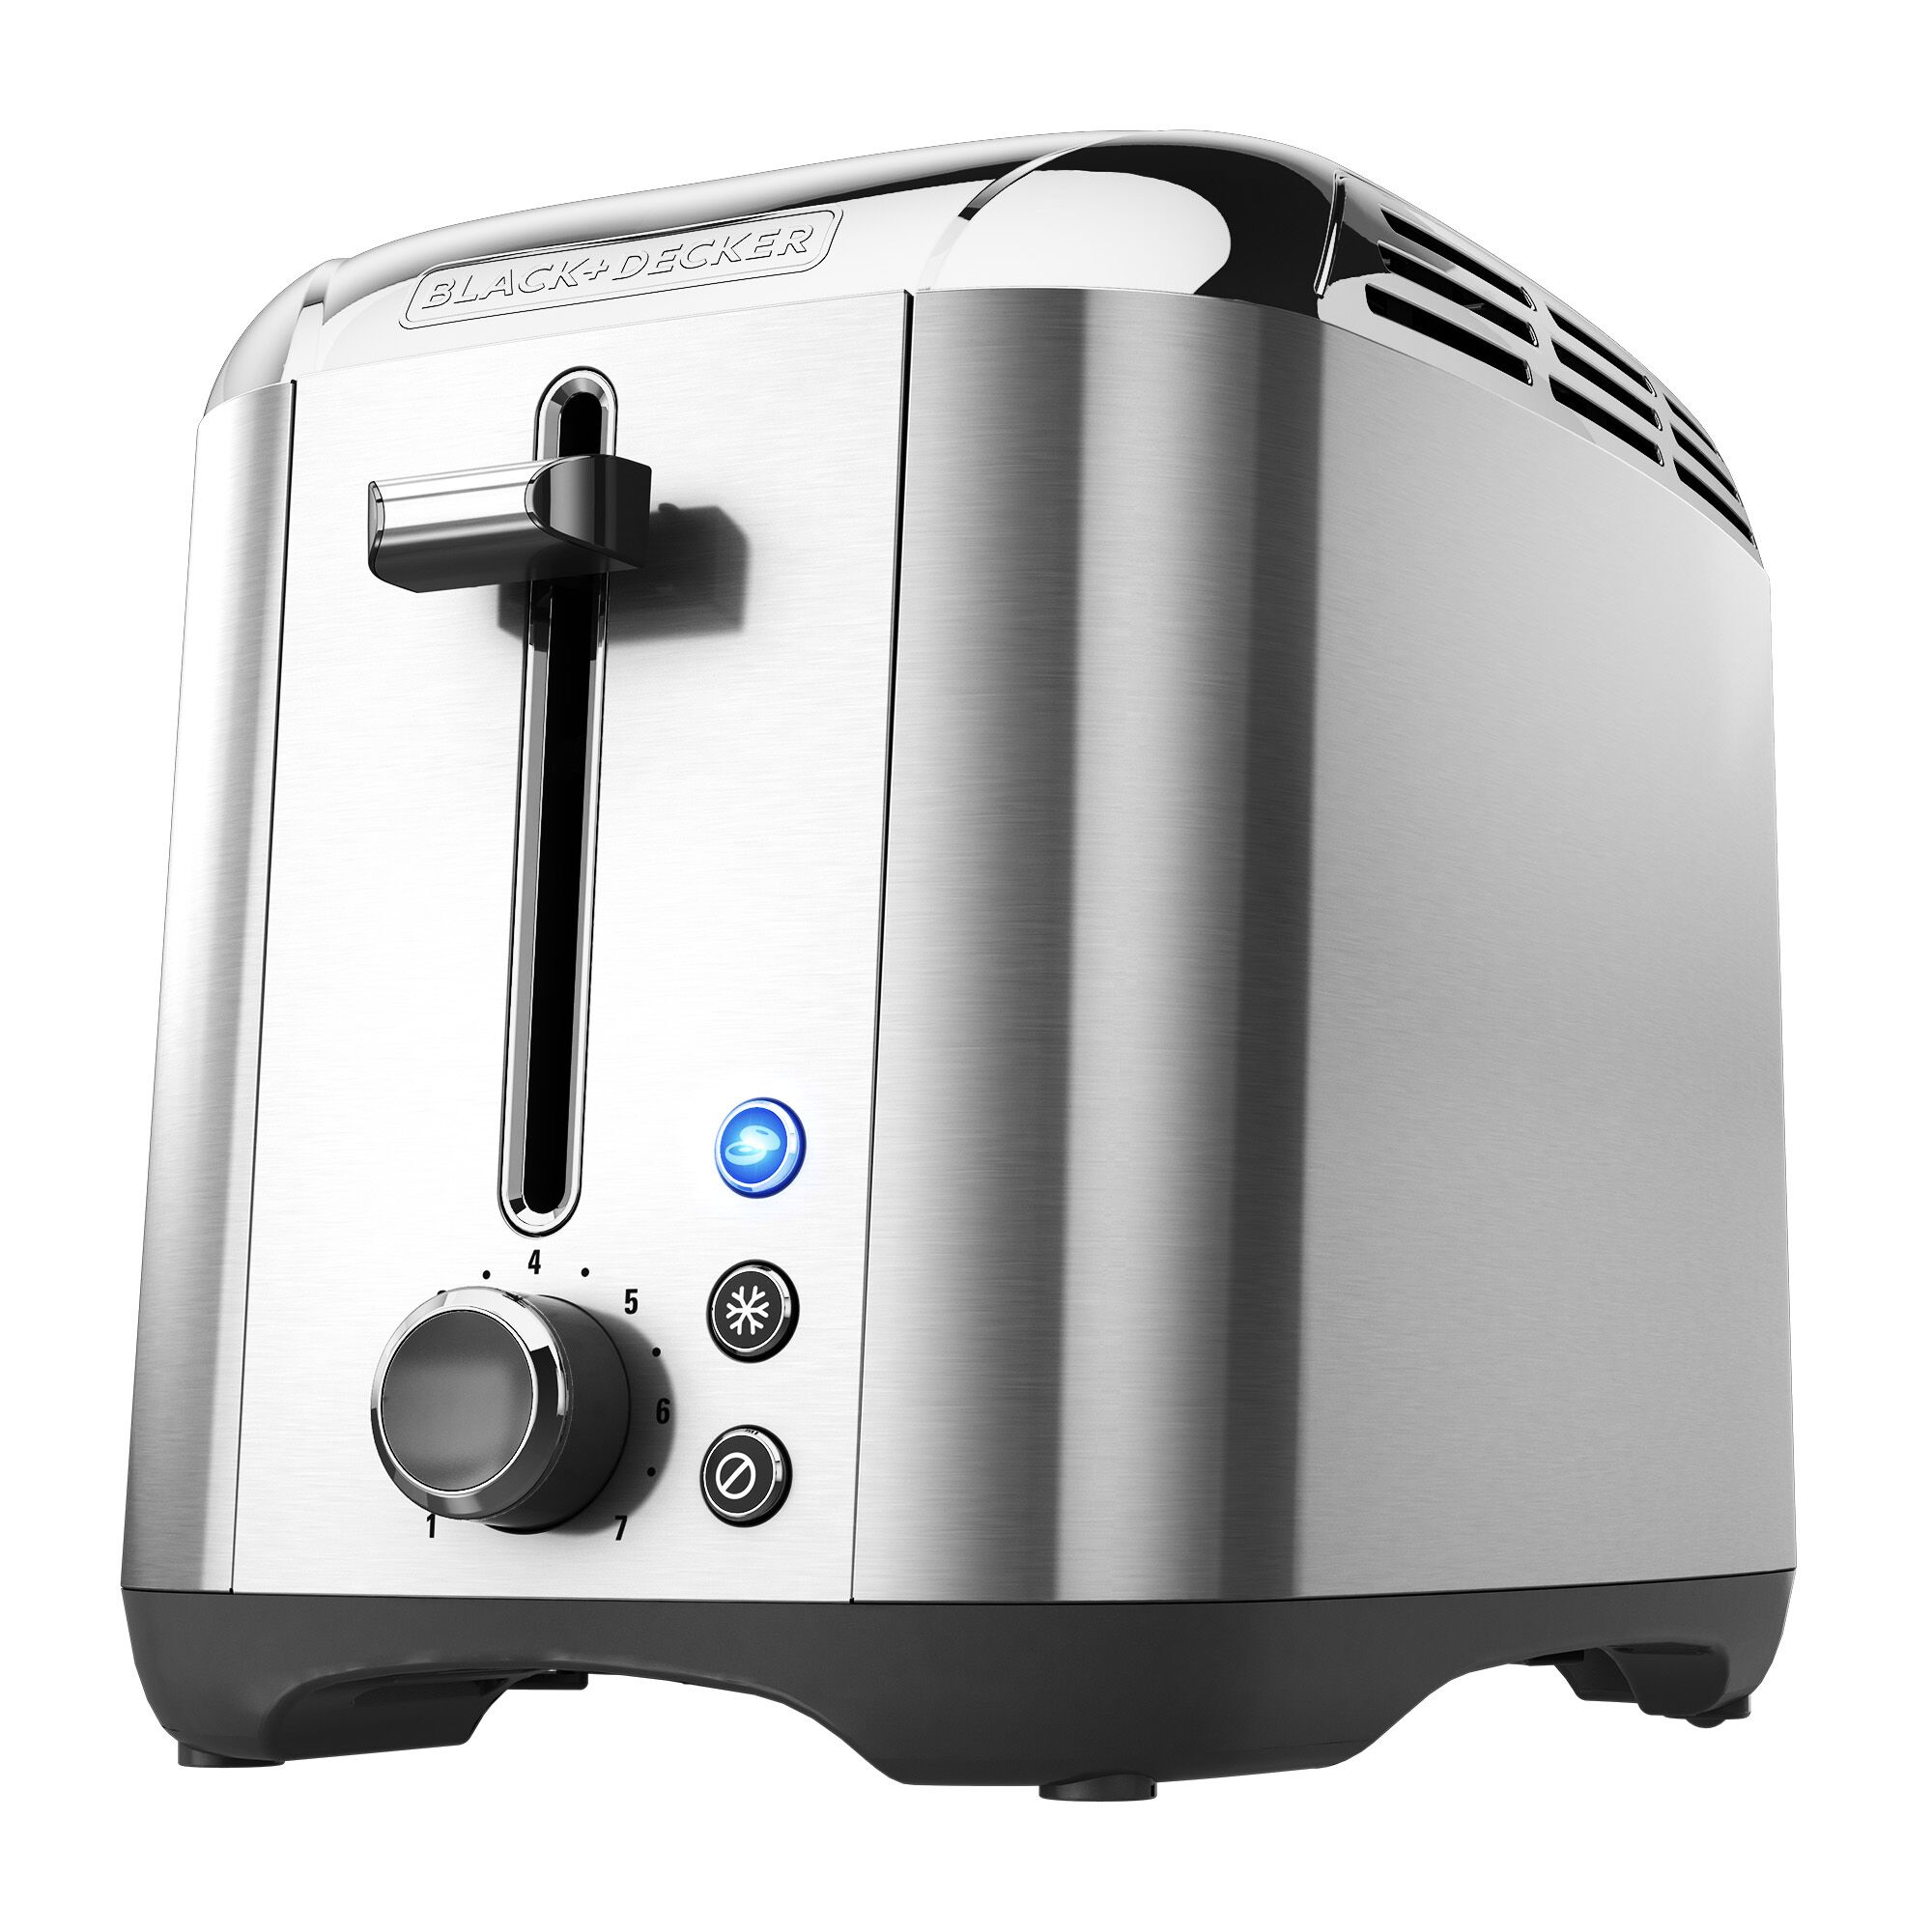 2-Slice Toaster on white background.